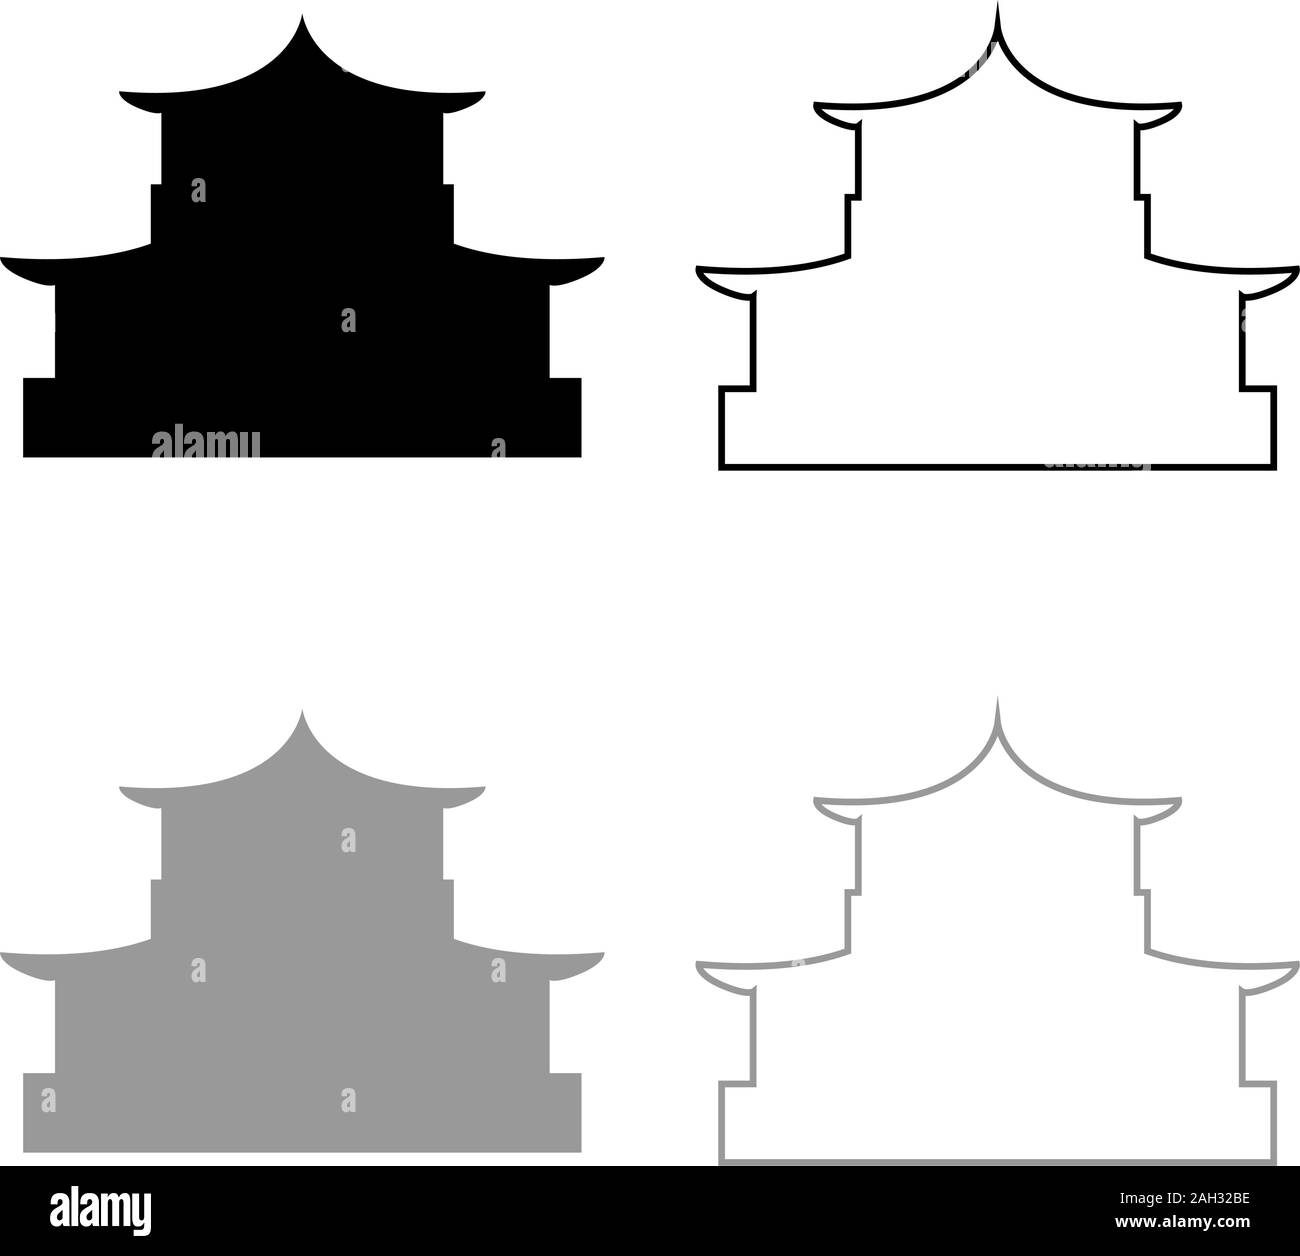 Chinesische Haus Silhouette der traditionellen asiatischen Pagode Japanische dom Fassade Symbol outline Schwarz Grau Farbe Vektor-illustration Flat Style einfach einstellen Stock Vektor